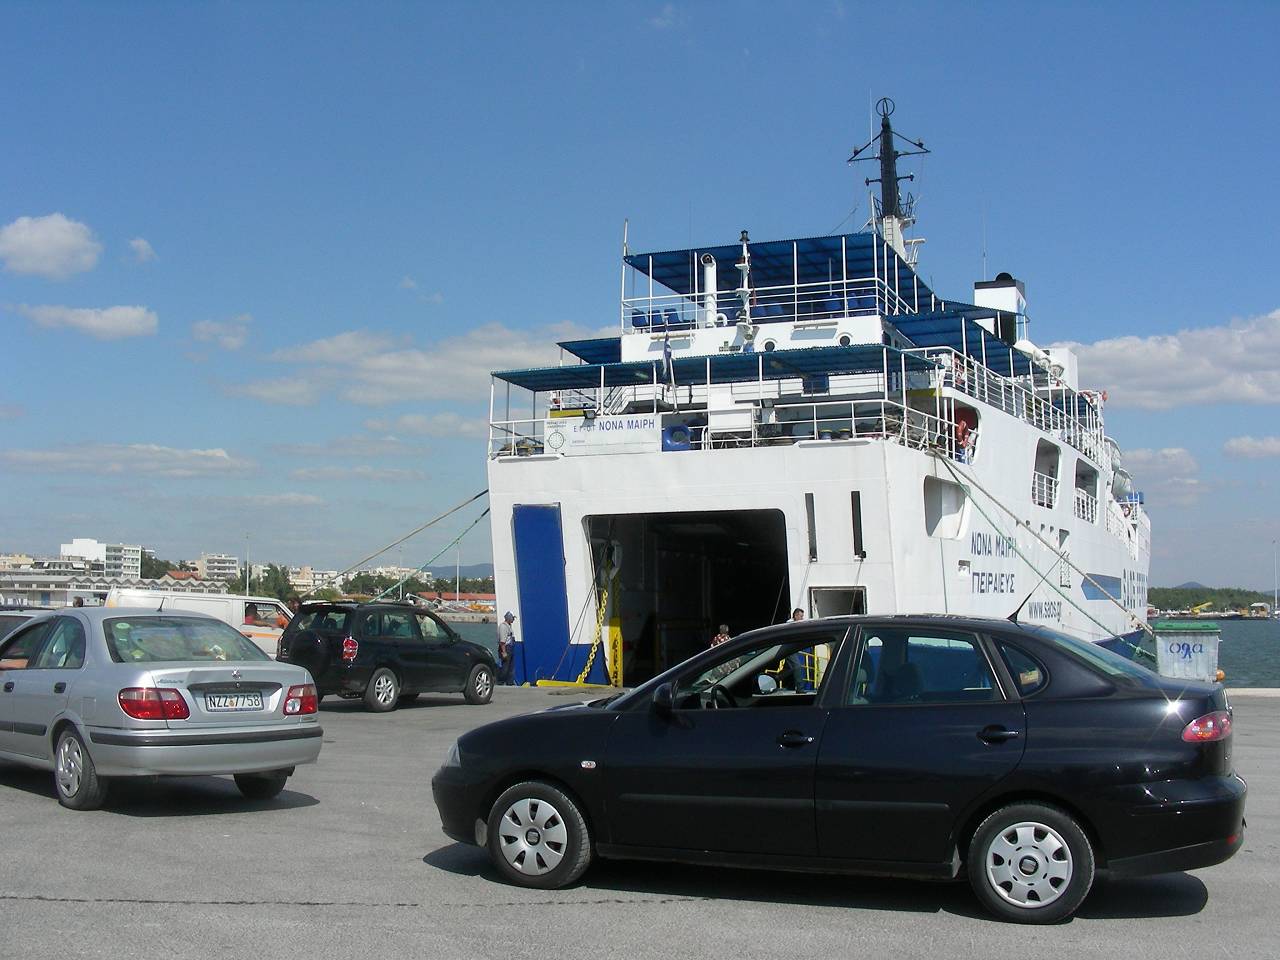 Mietauto steht im Hafen von Alexandroupolis bereit zur Fahrt auf die Faehre nach Samothraki